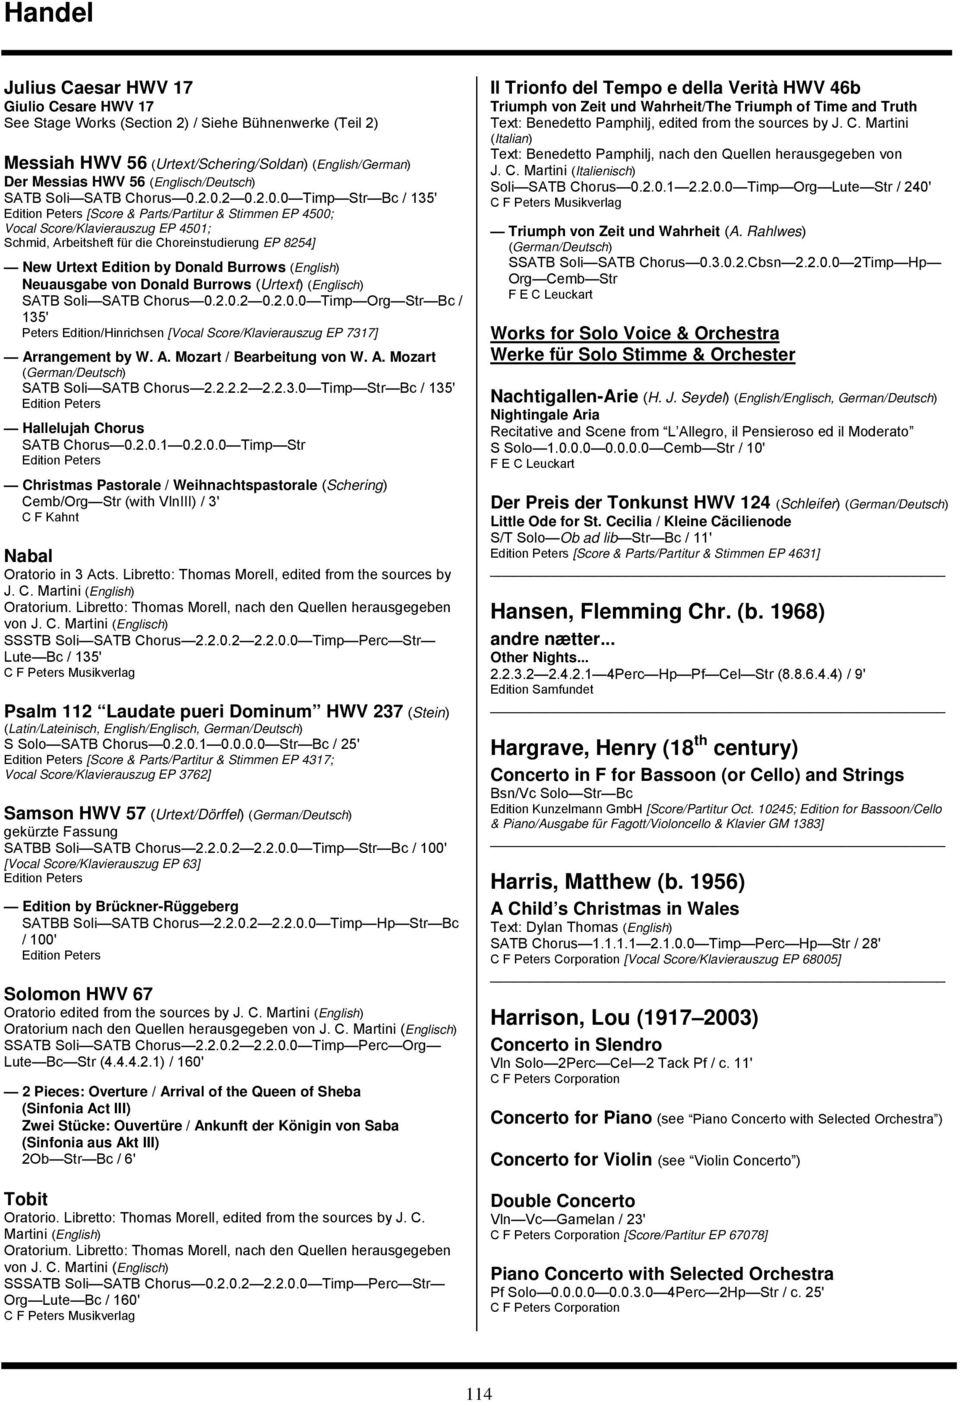 Burrows (English) Neuausgabe von Donald Burrows (Urtext) (Englisch) SATB Soli SATB Chorus 0.2.0.2 0.2.0.0 Timp Org Str Bc / 135' [Vocal Score/Klavierauszug EP 7317] Arrangement by W. A. Mozart / Bearbeitung von W.